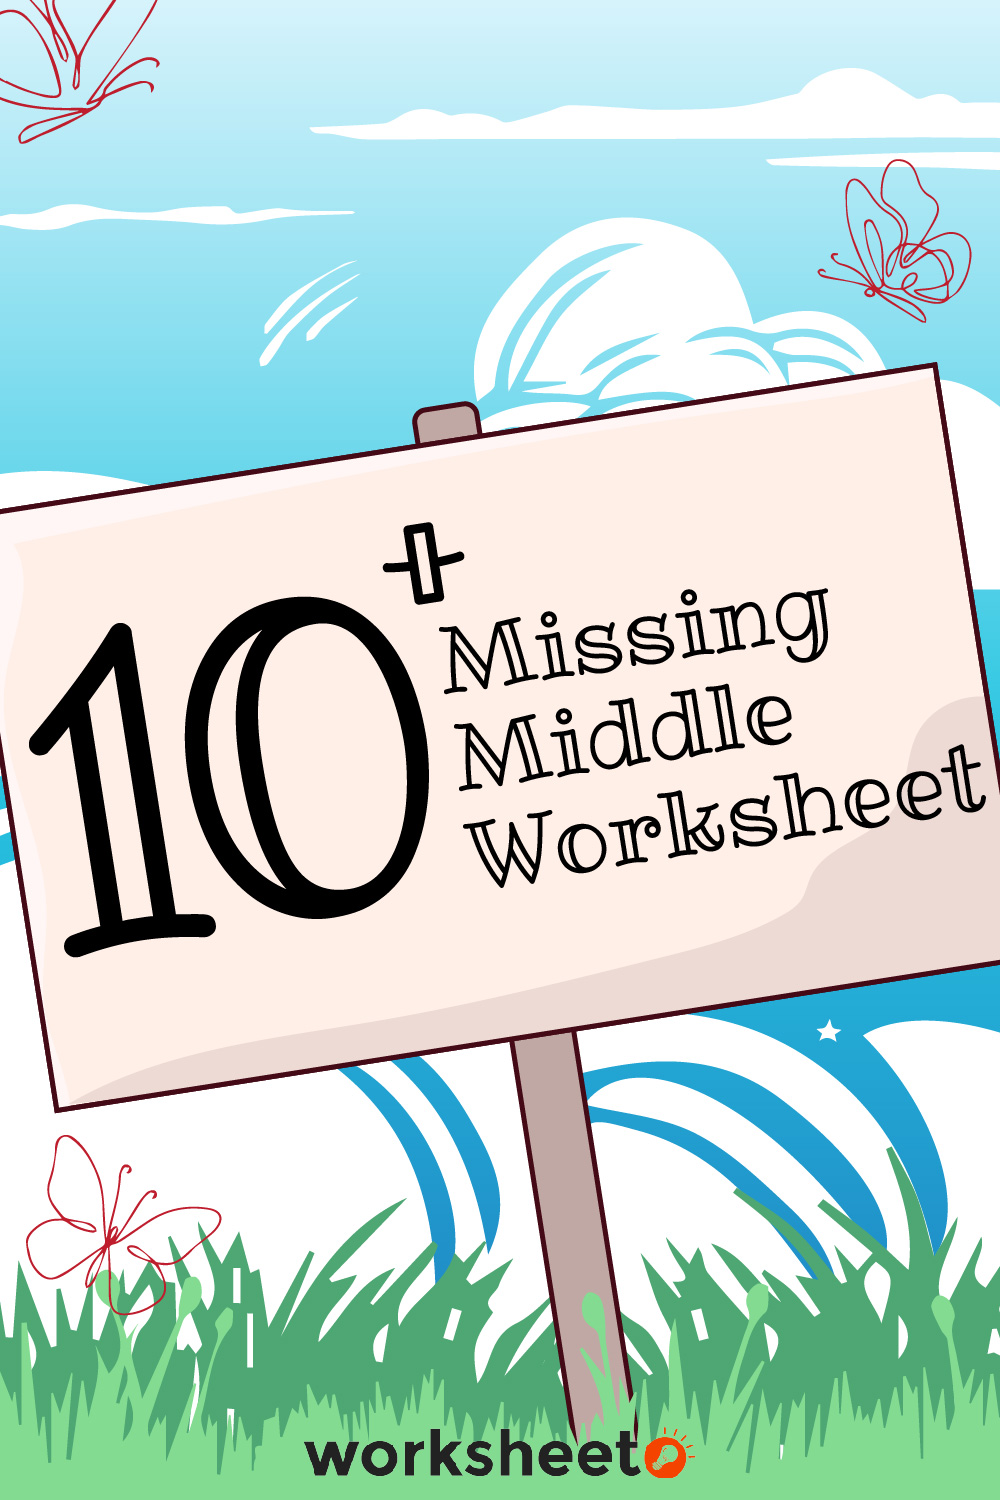 19 Images of Missing Middle Worksheet